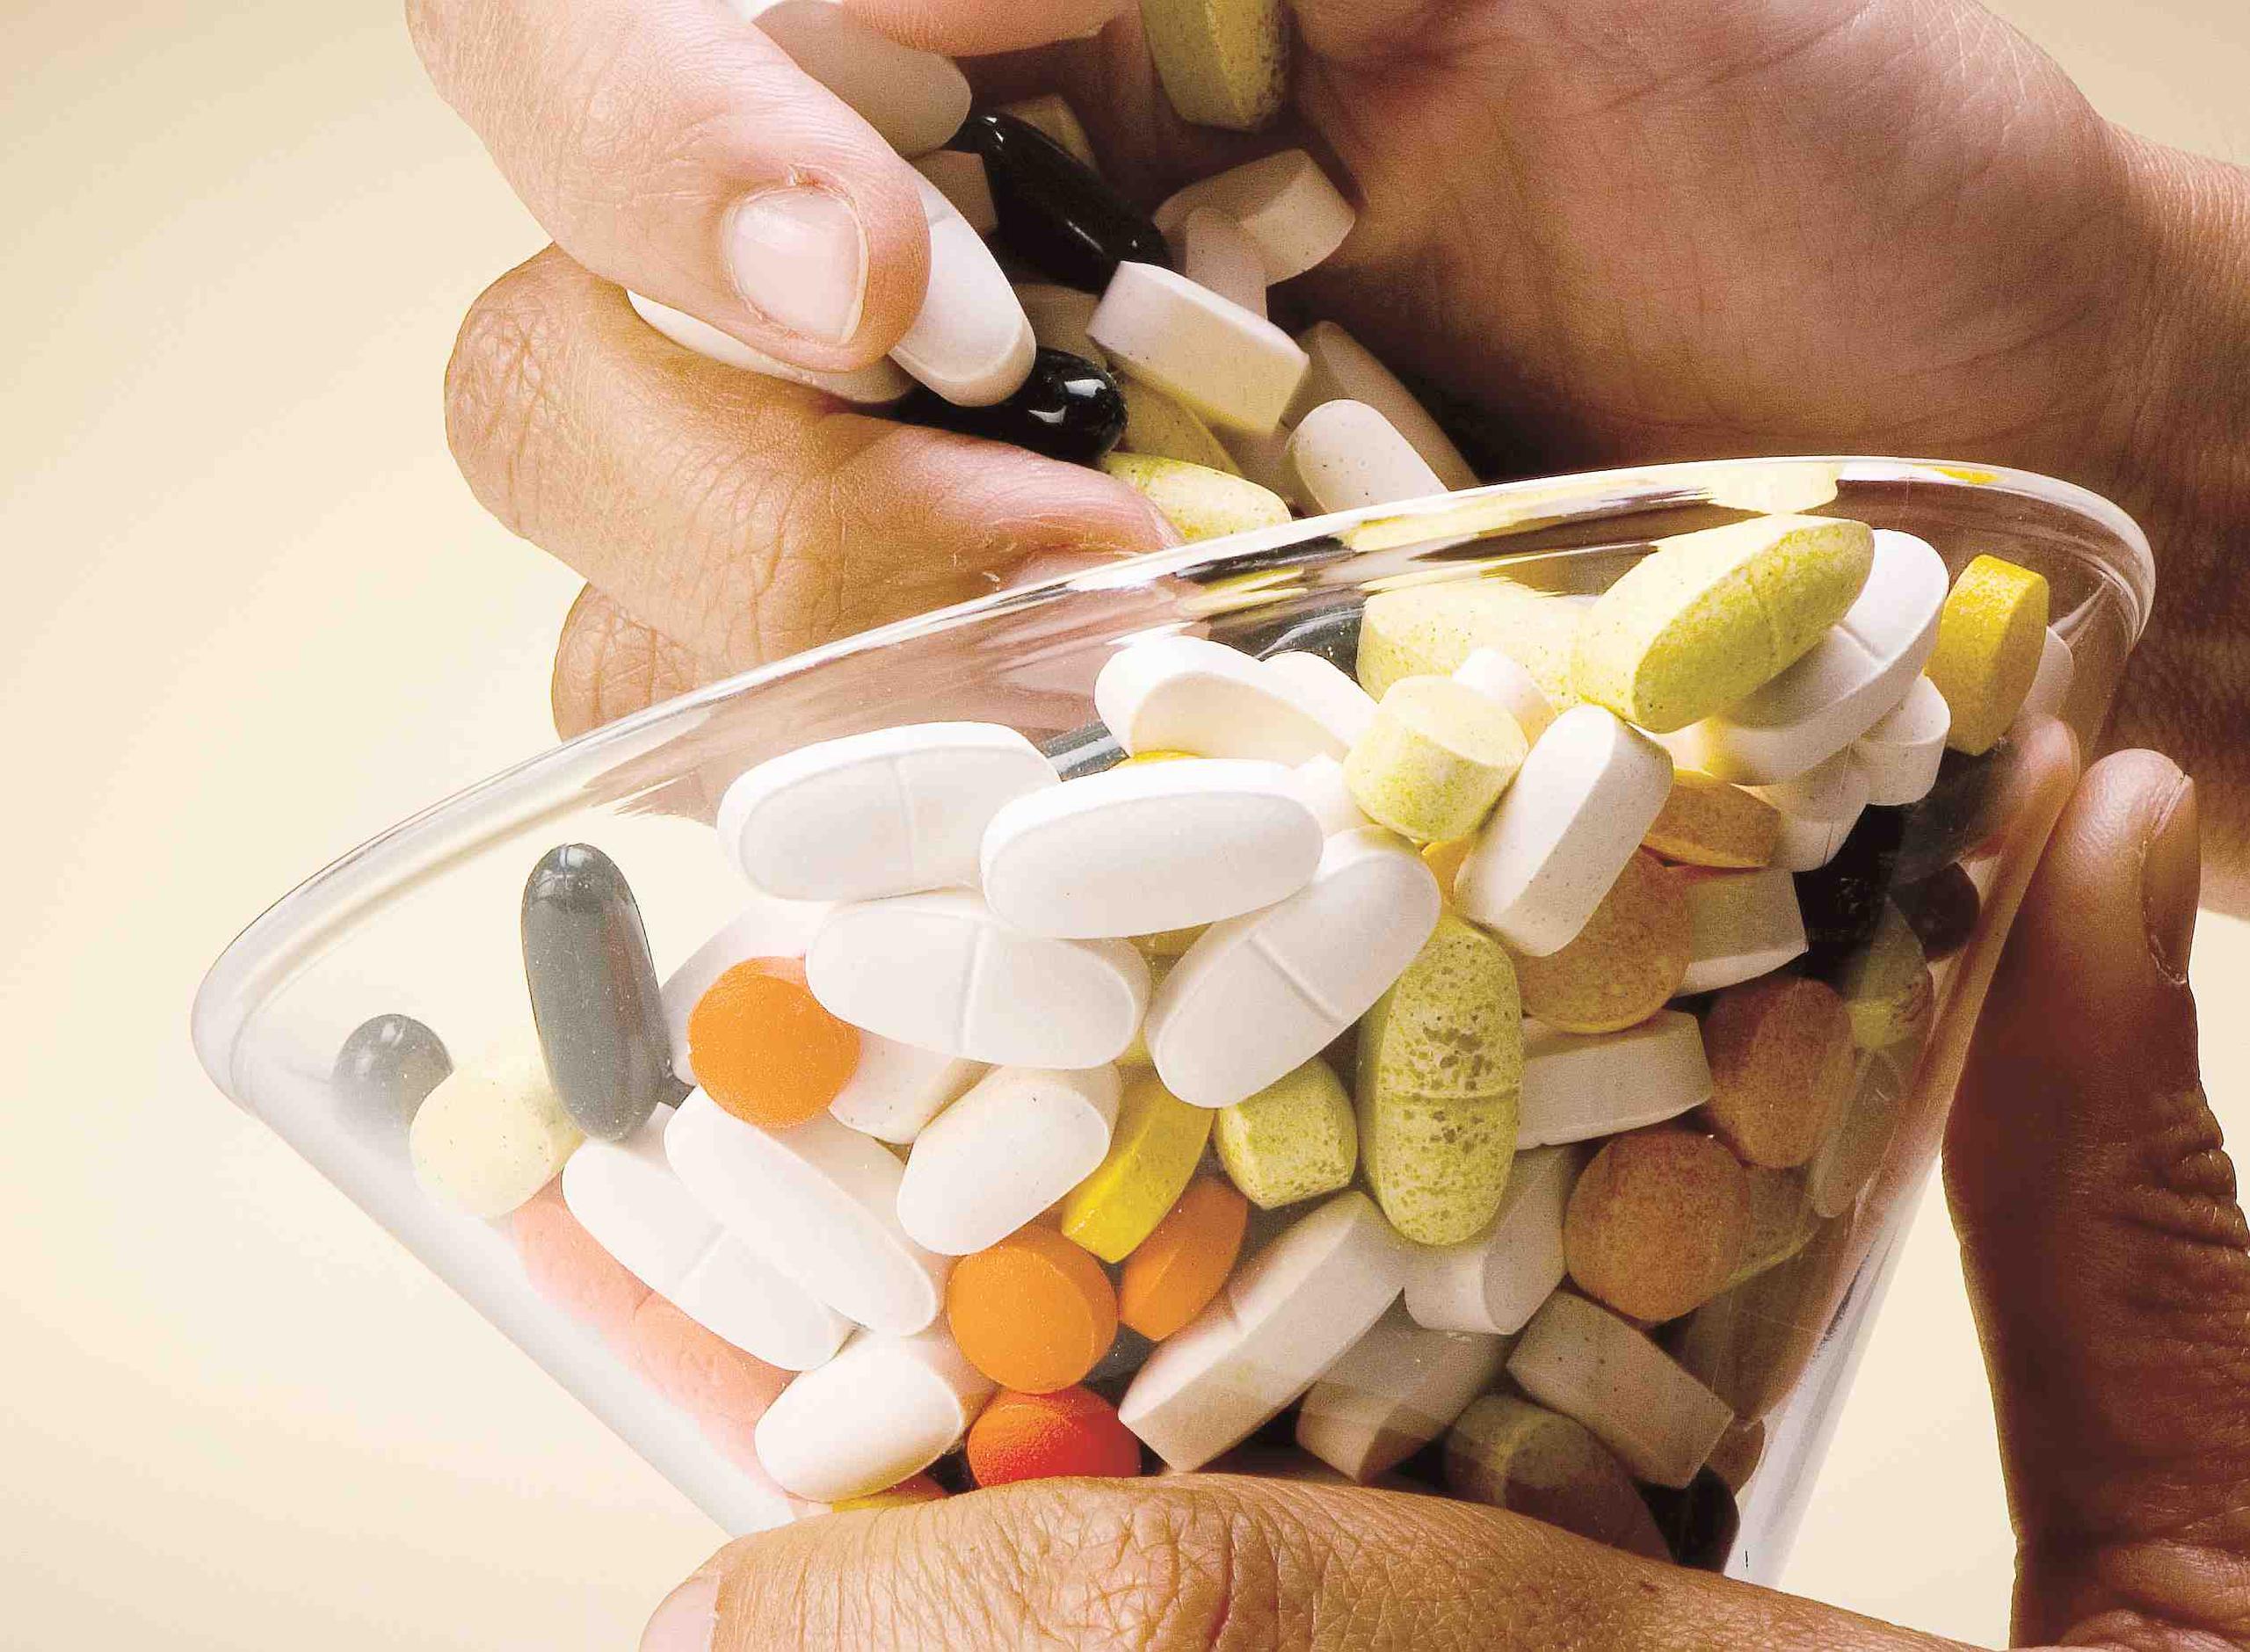 A nivel nacional, hay una epidemia de adicción, sobredosis y muertes a causa de abuso de medicamentos recetados, particularmente de analgésicos, que son para aliviar el dolor. (Archivo / GFR Media)